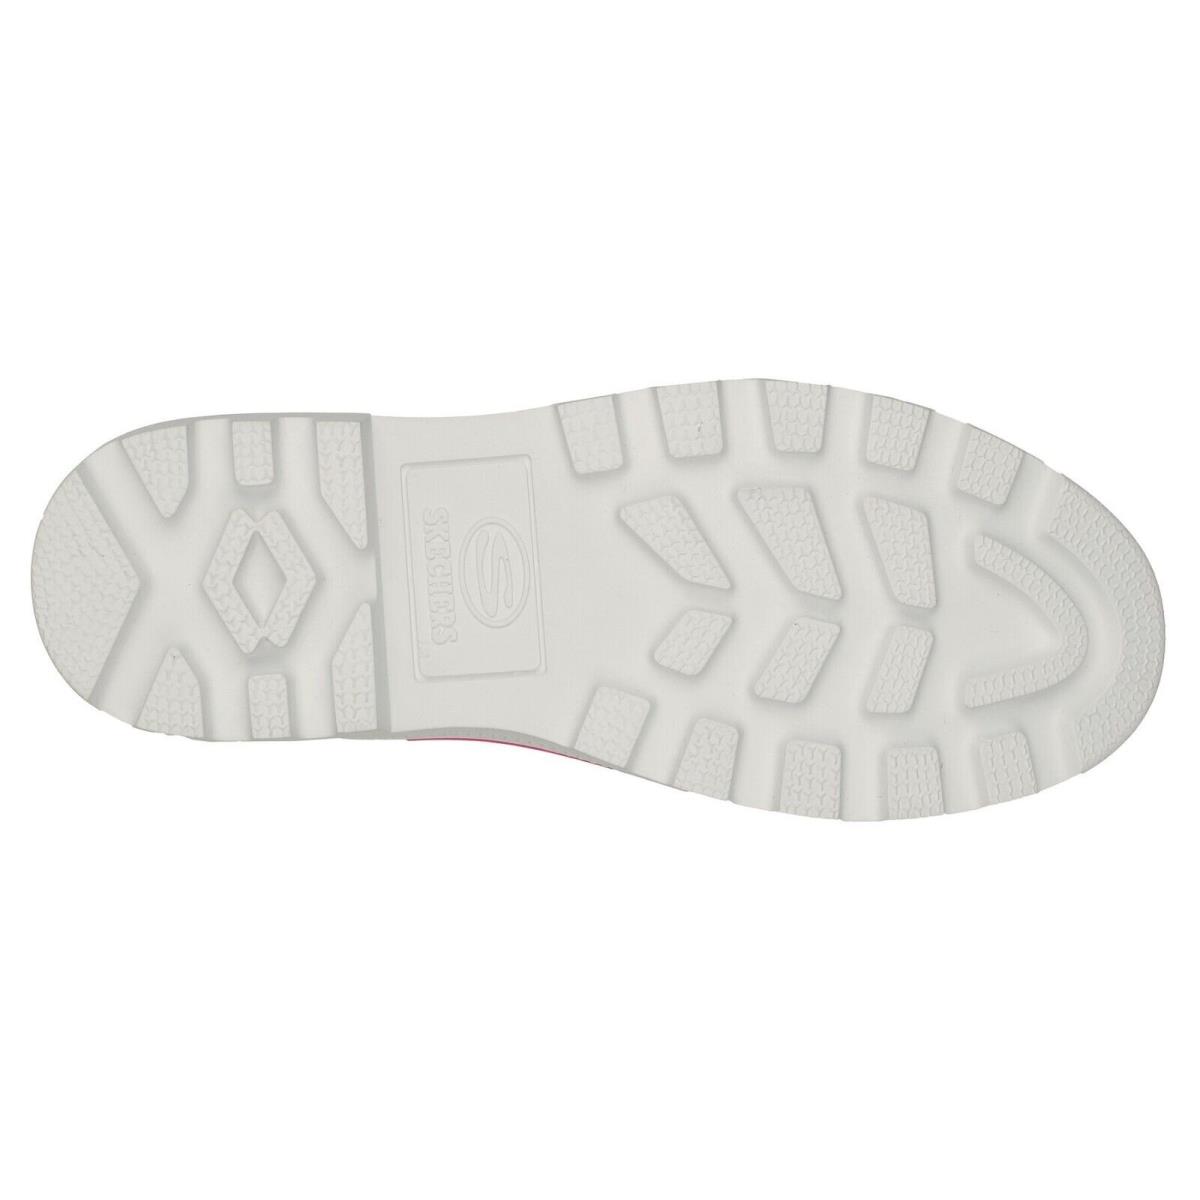 Skechers shoes Roadies - Hot Pink 8